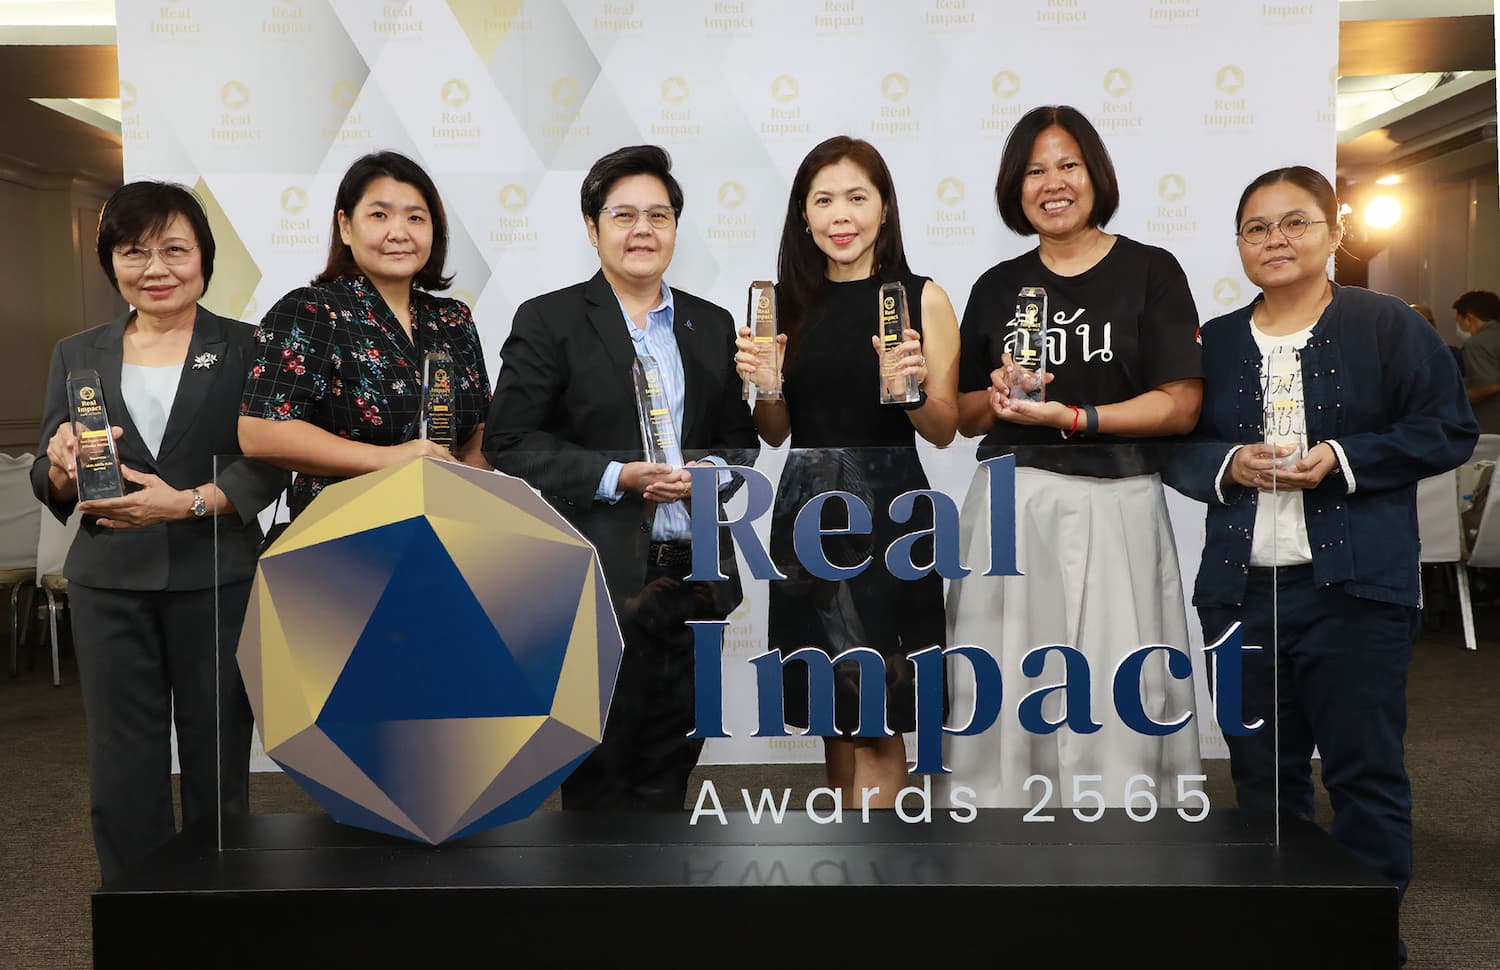 ข่าวธุรกิจ, สังคม - 8 องค์กรชั้นนำรับรางวัลเชิดชูเกียรติ Real Impact Awards 2565 ต้นแบบการดำเนินงานเพื่อความยั่งยืนที่ส่งผลเชิงบวกต่อสังคม